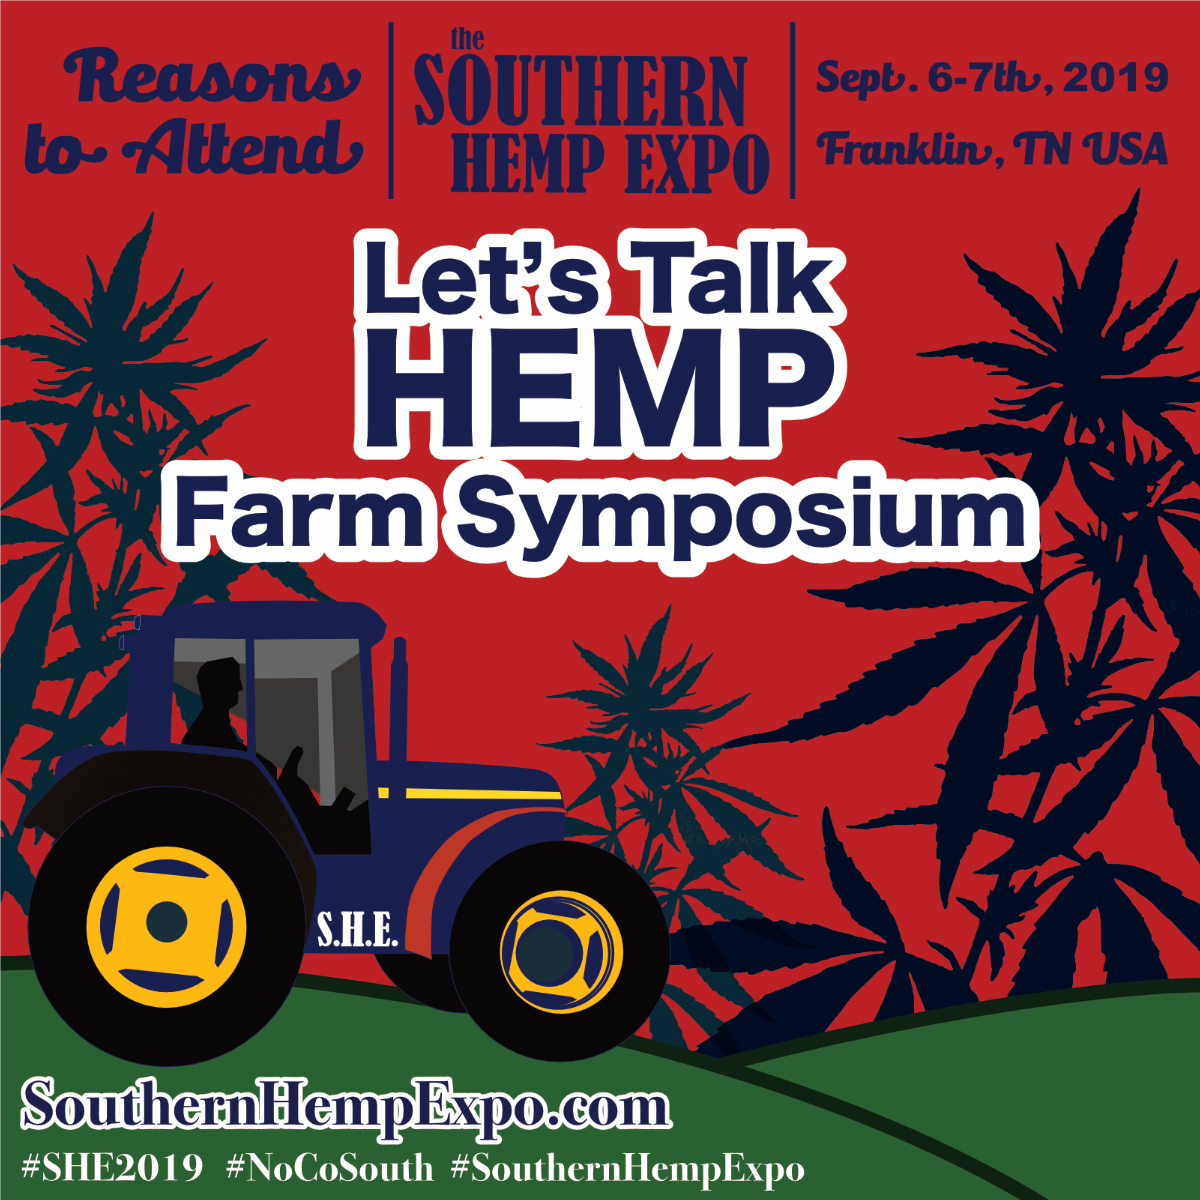 Let's talk Hemp Farm Symposium